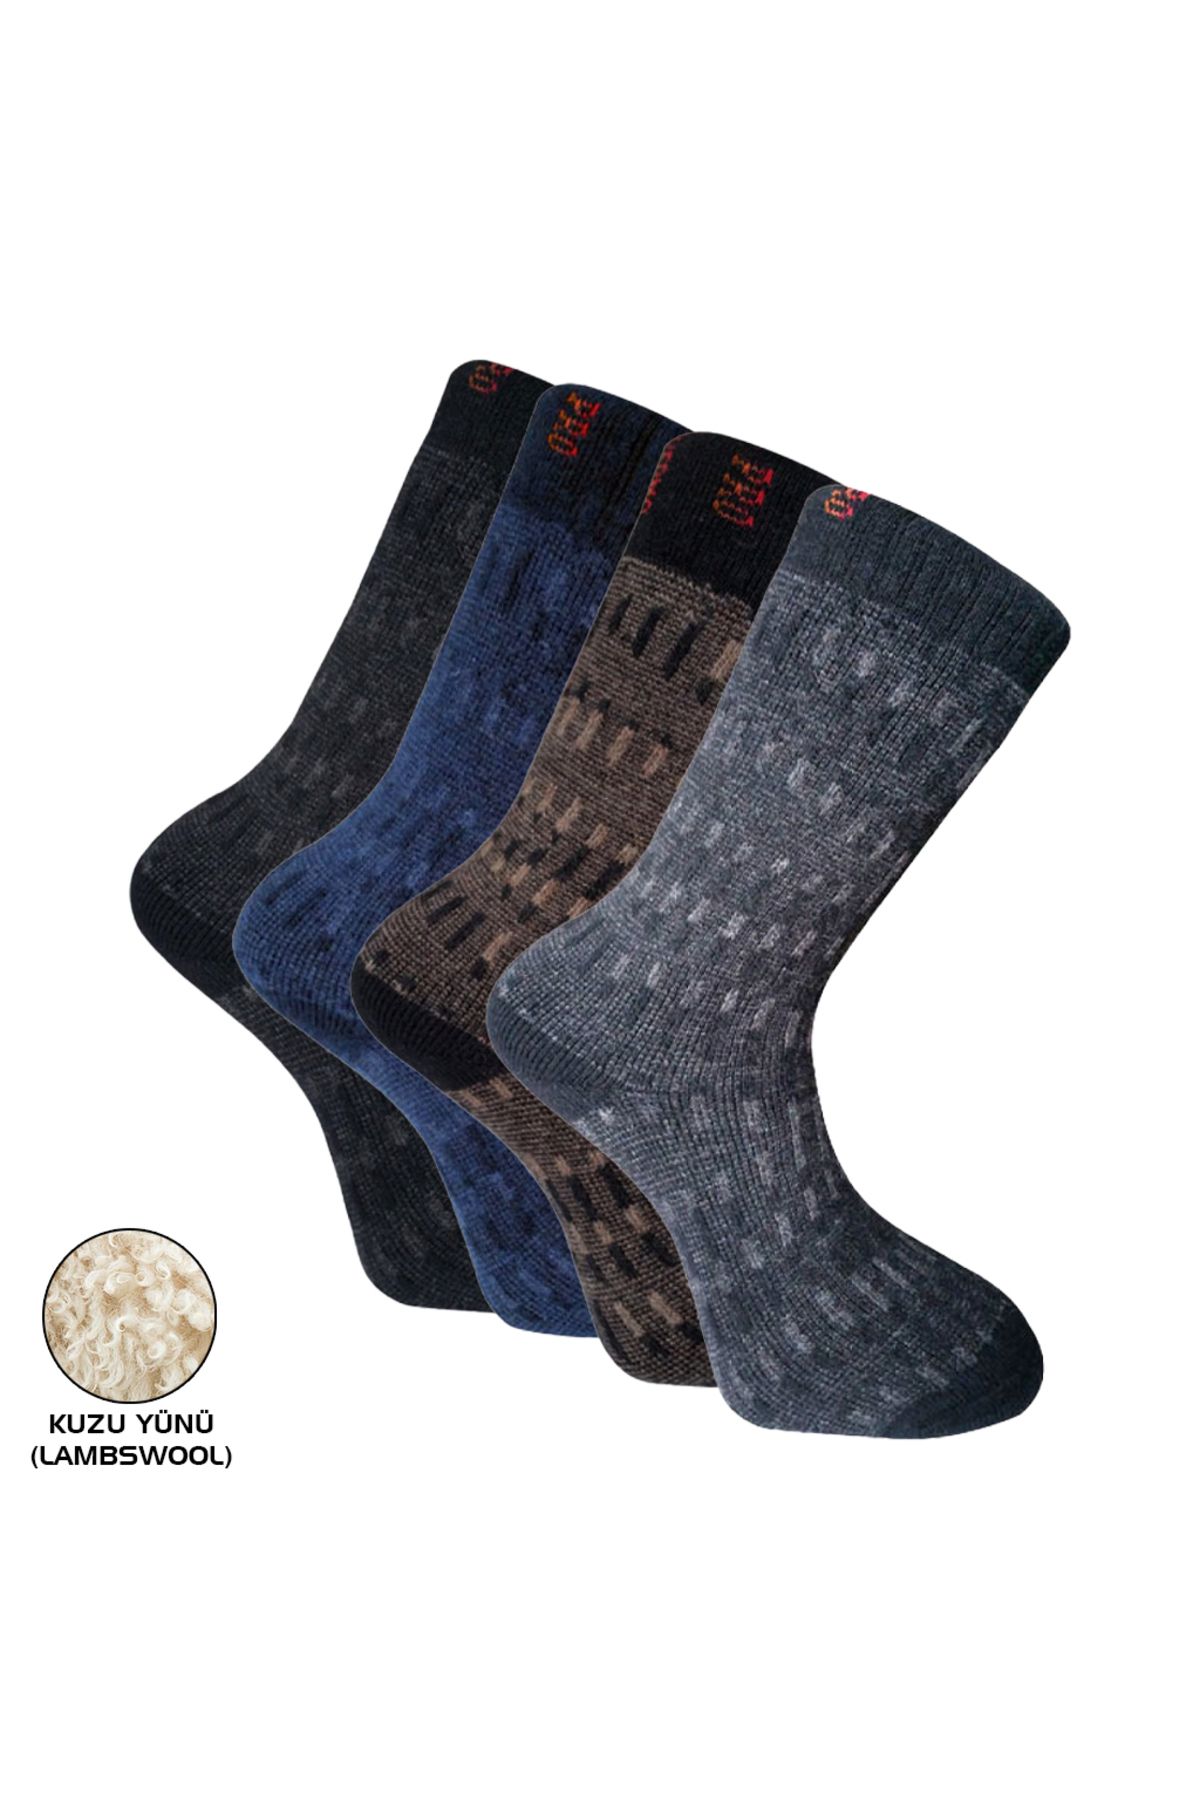 Genel Markalar Outdoor Pro Çorap Yupik Kuzu Yünü Erkek Havlu Çorabı 41-44 (13906)